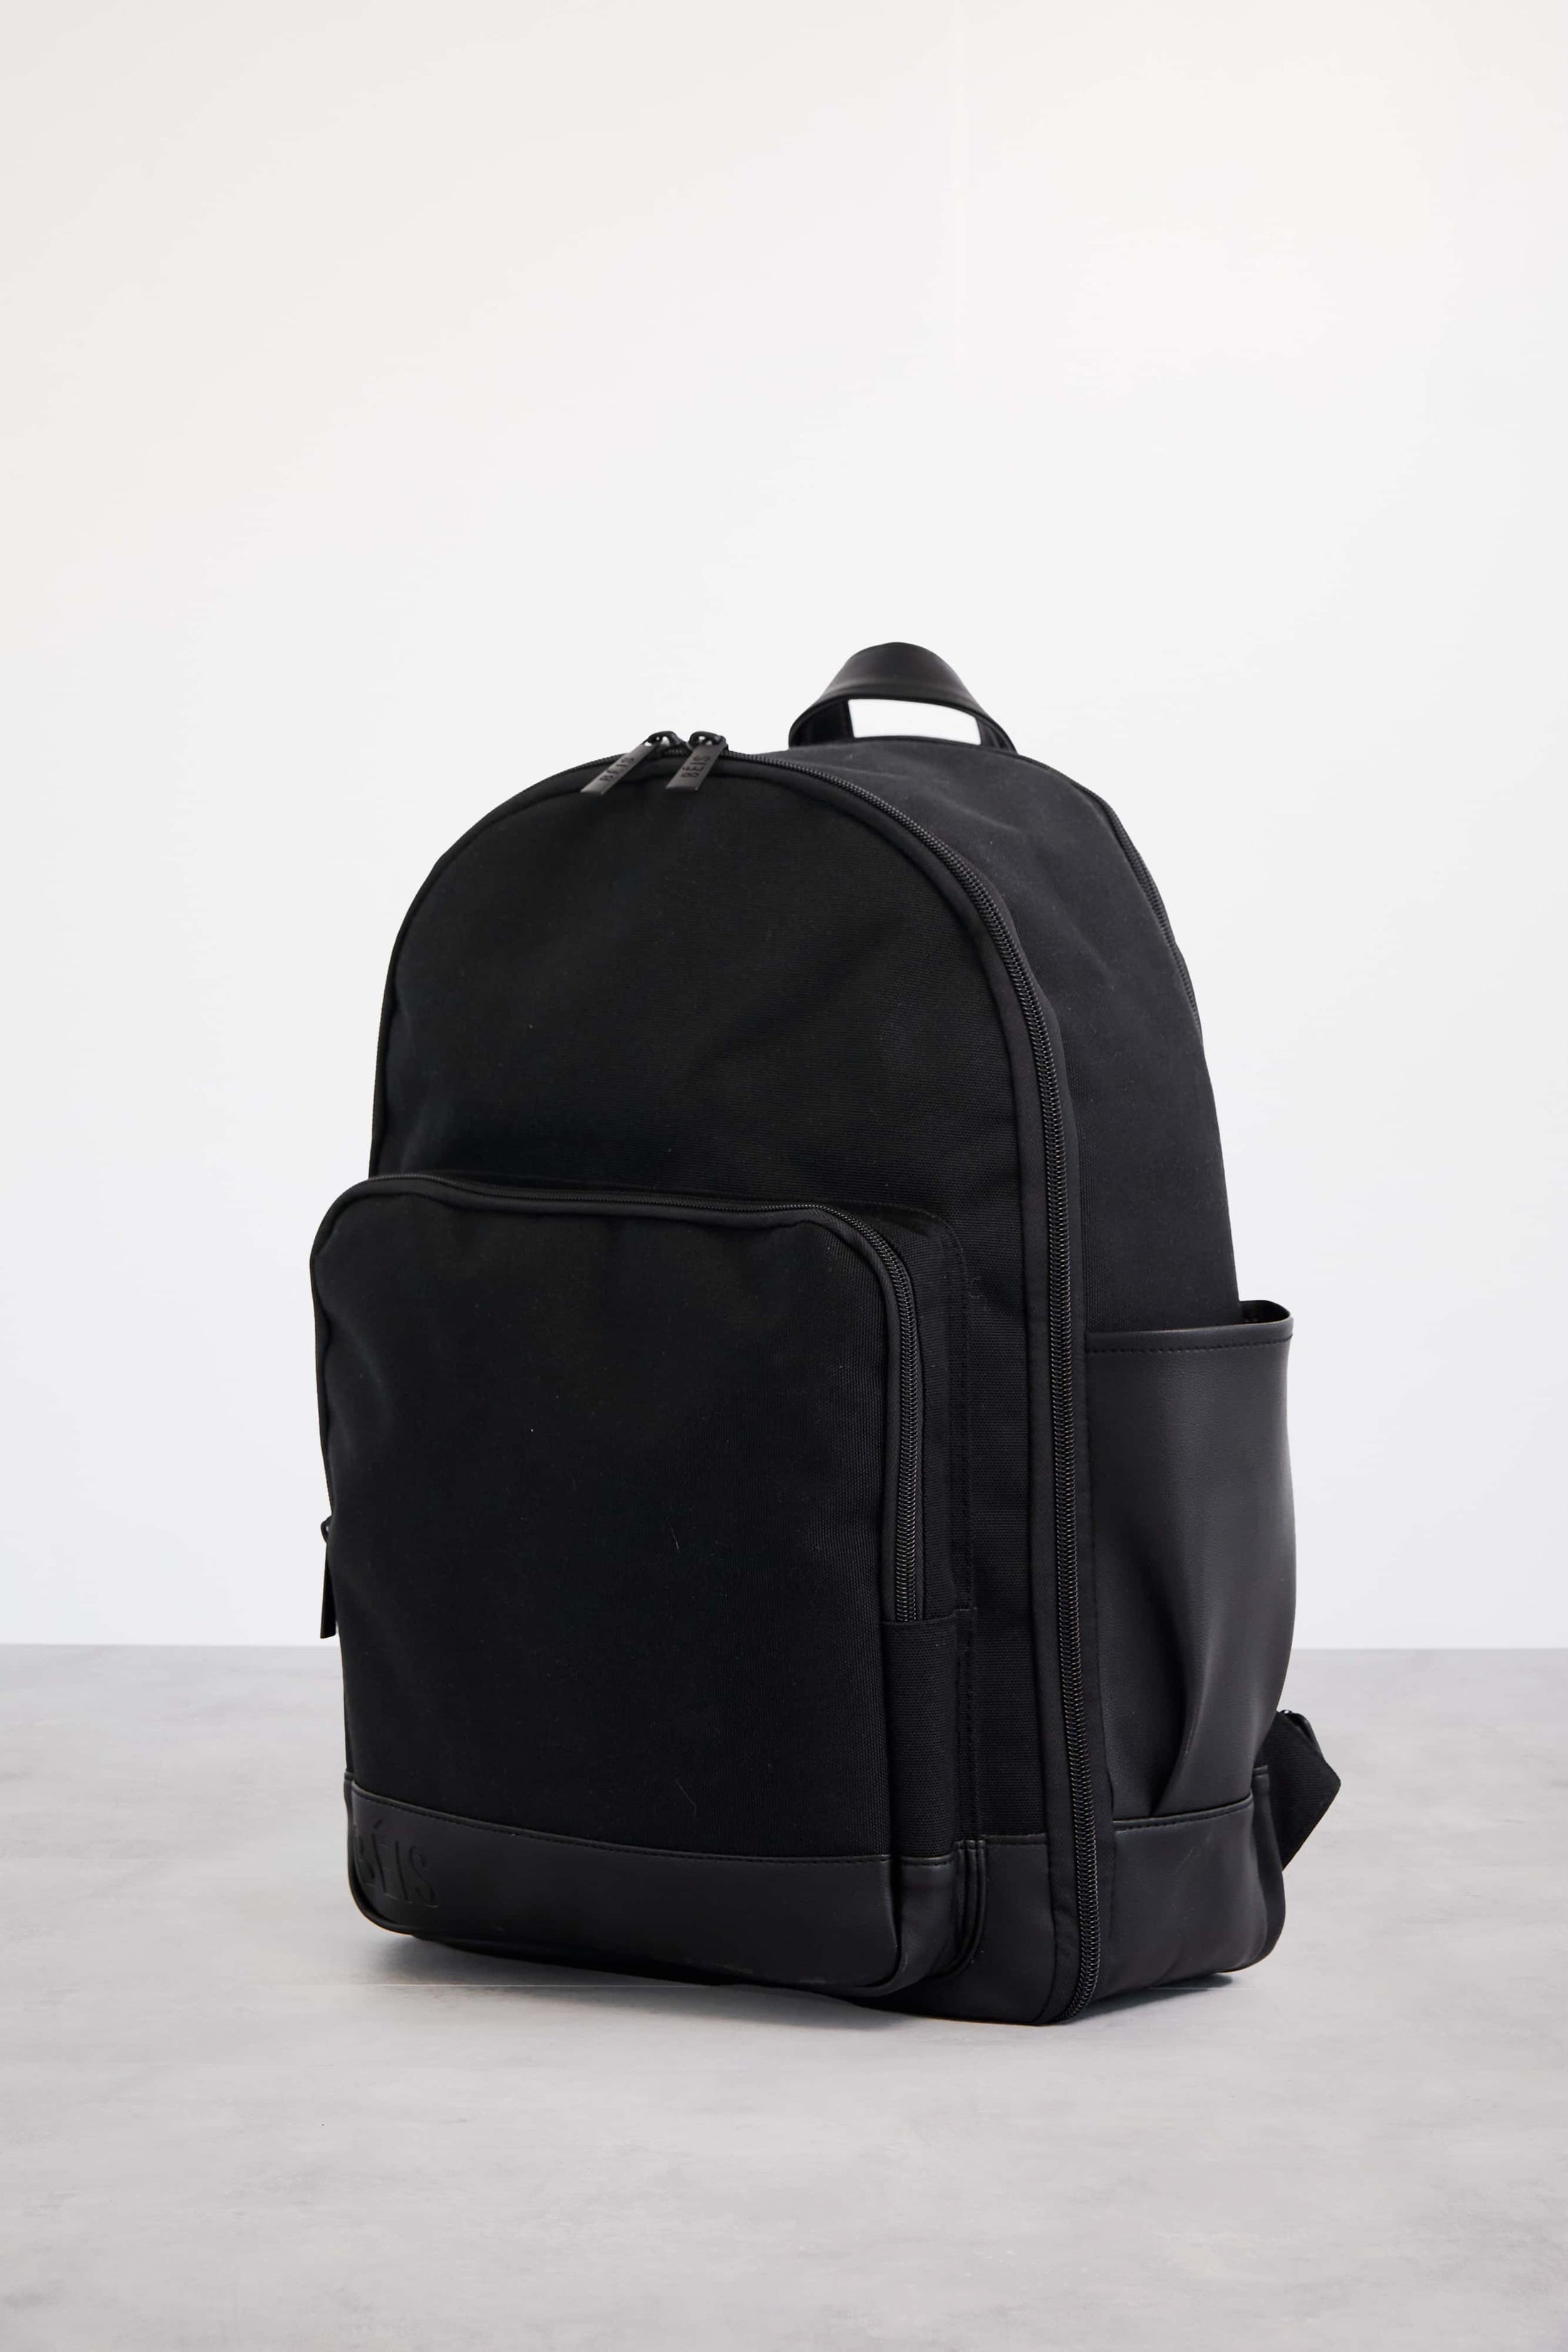 All Black Backpack & Bookbag